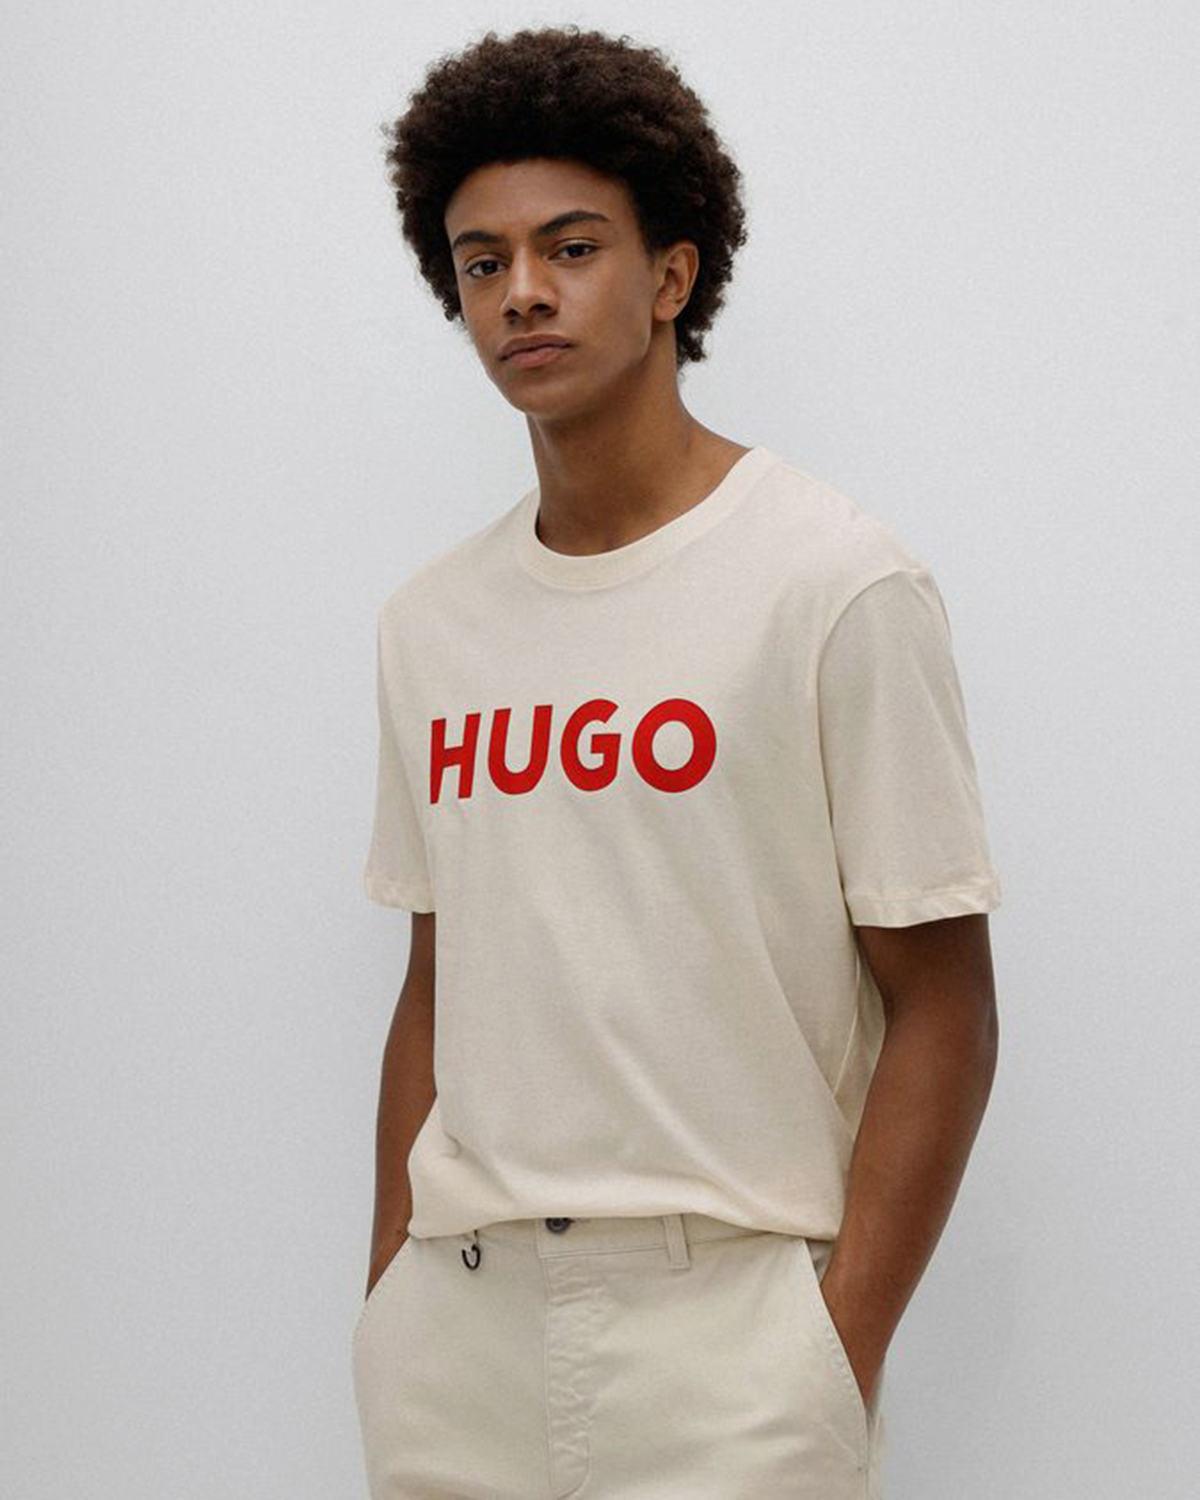 Купить футболку hugo. Футболка Hugo Dammock. Hugo футболка мужская. Белая футболка Hugo. Мужская футболка Hugo оригинал.